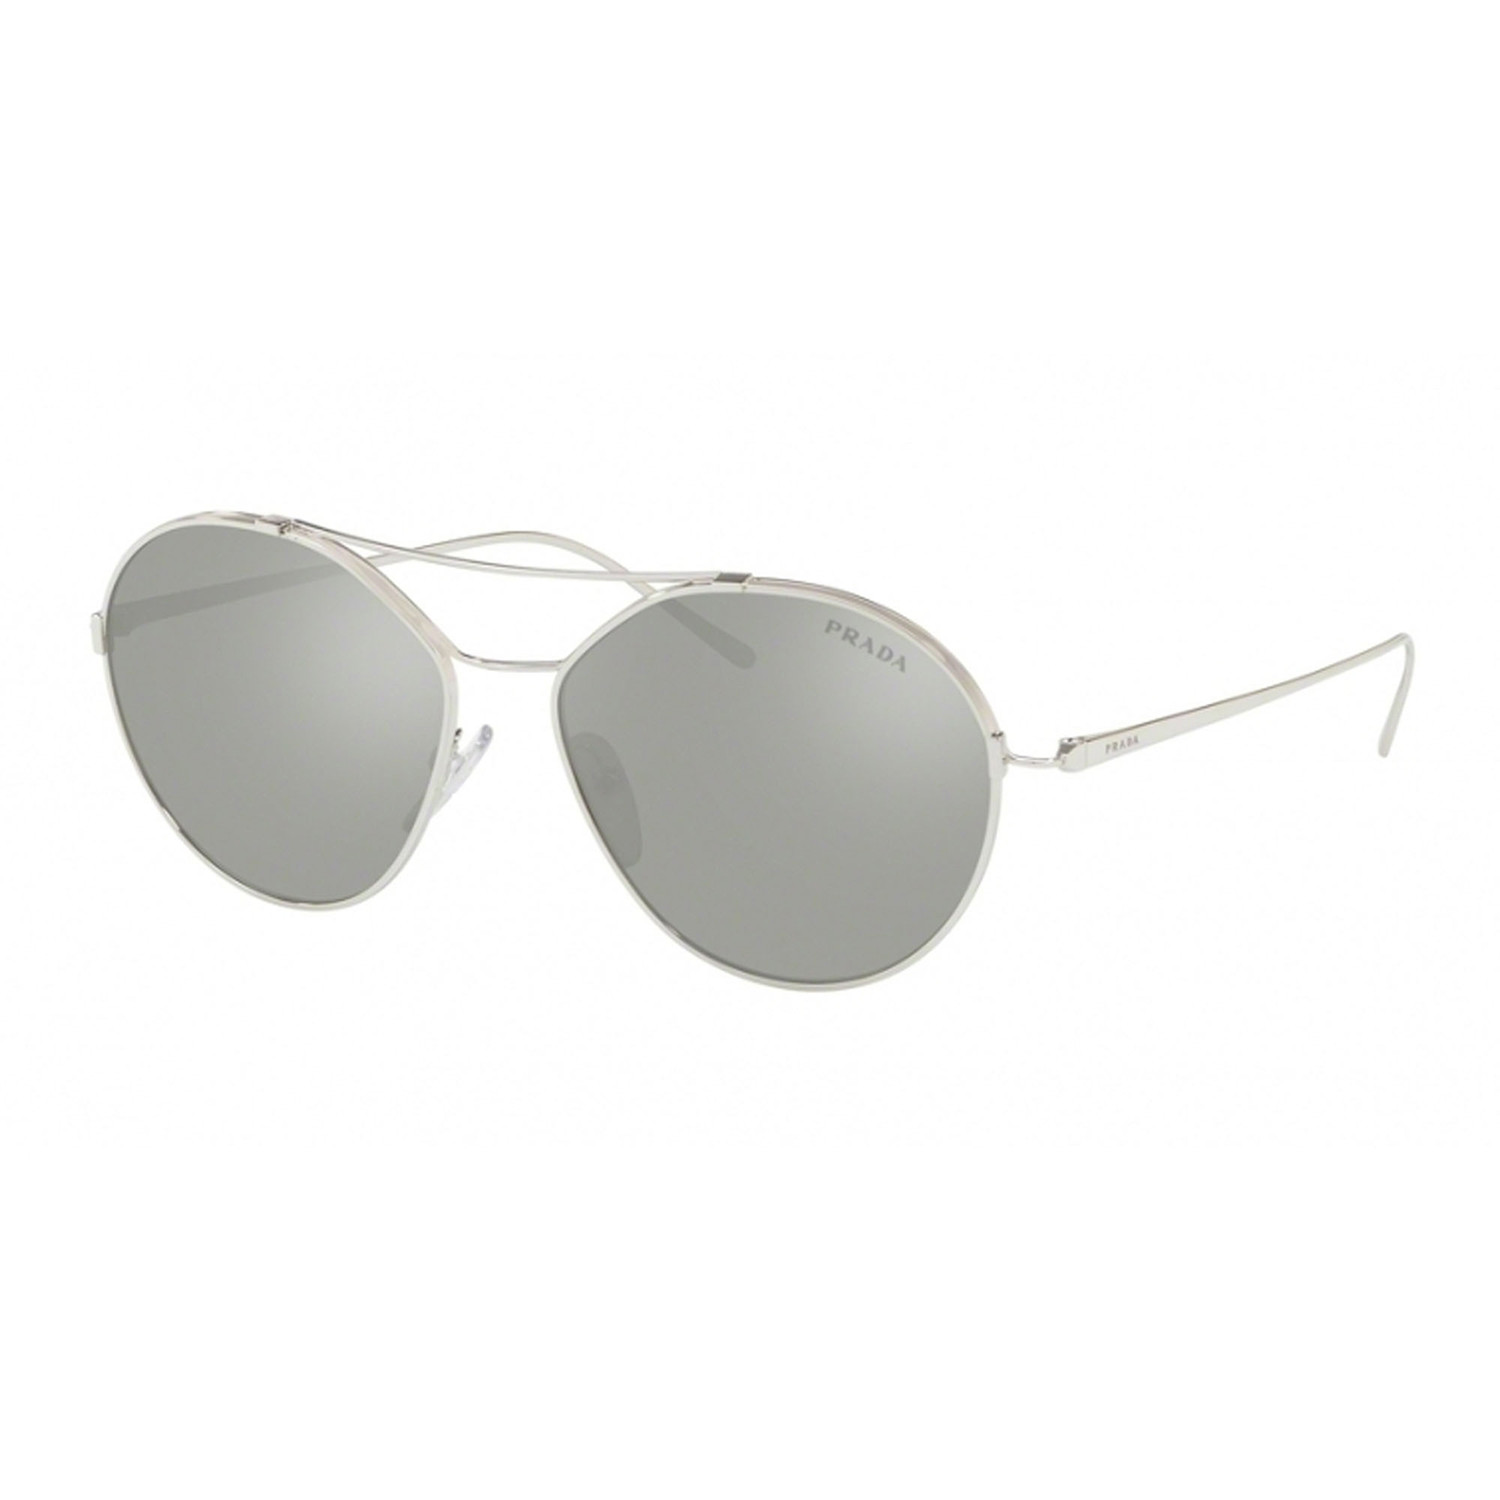 Prada // Men's 56US Sunglasses // Silver + Silver Mirror - Dior, Fendi ...